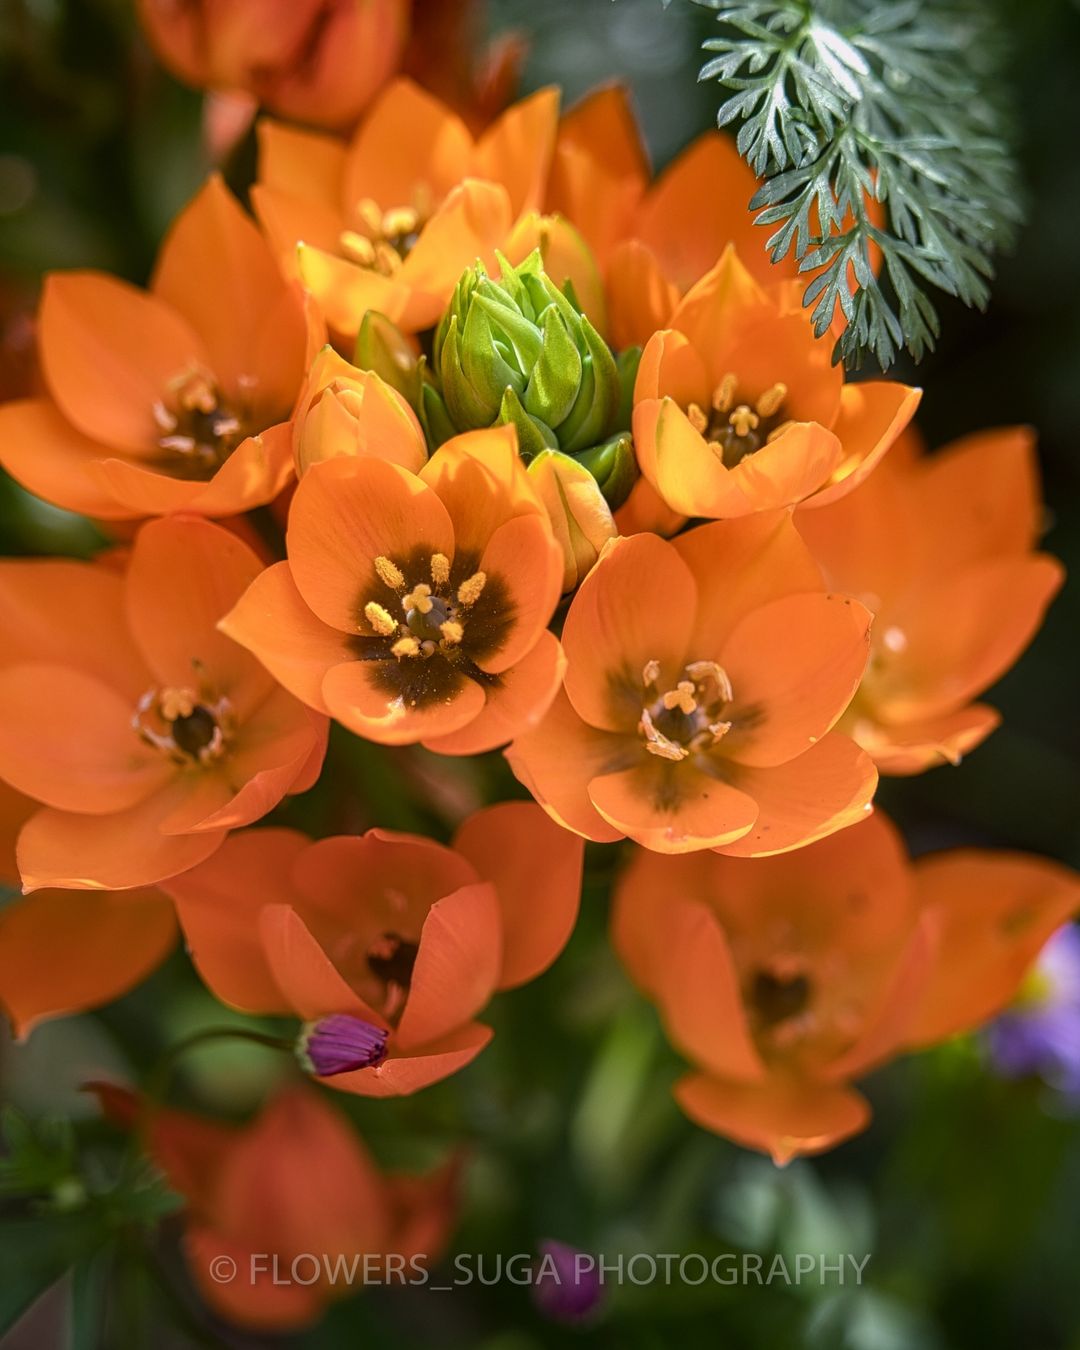 Красота цветов на снимках Хисаши Сугам. ФОТО